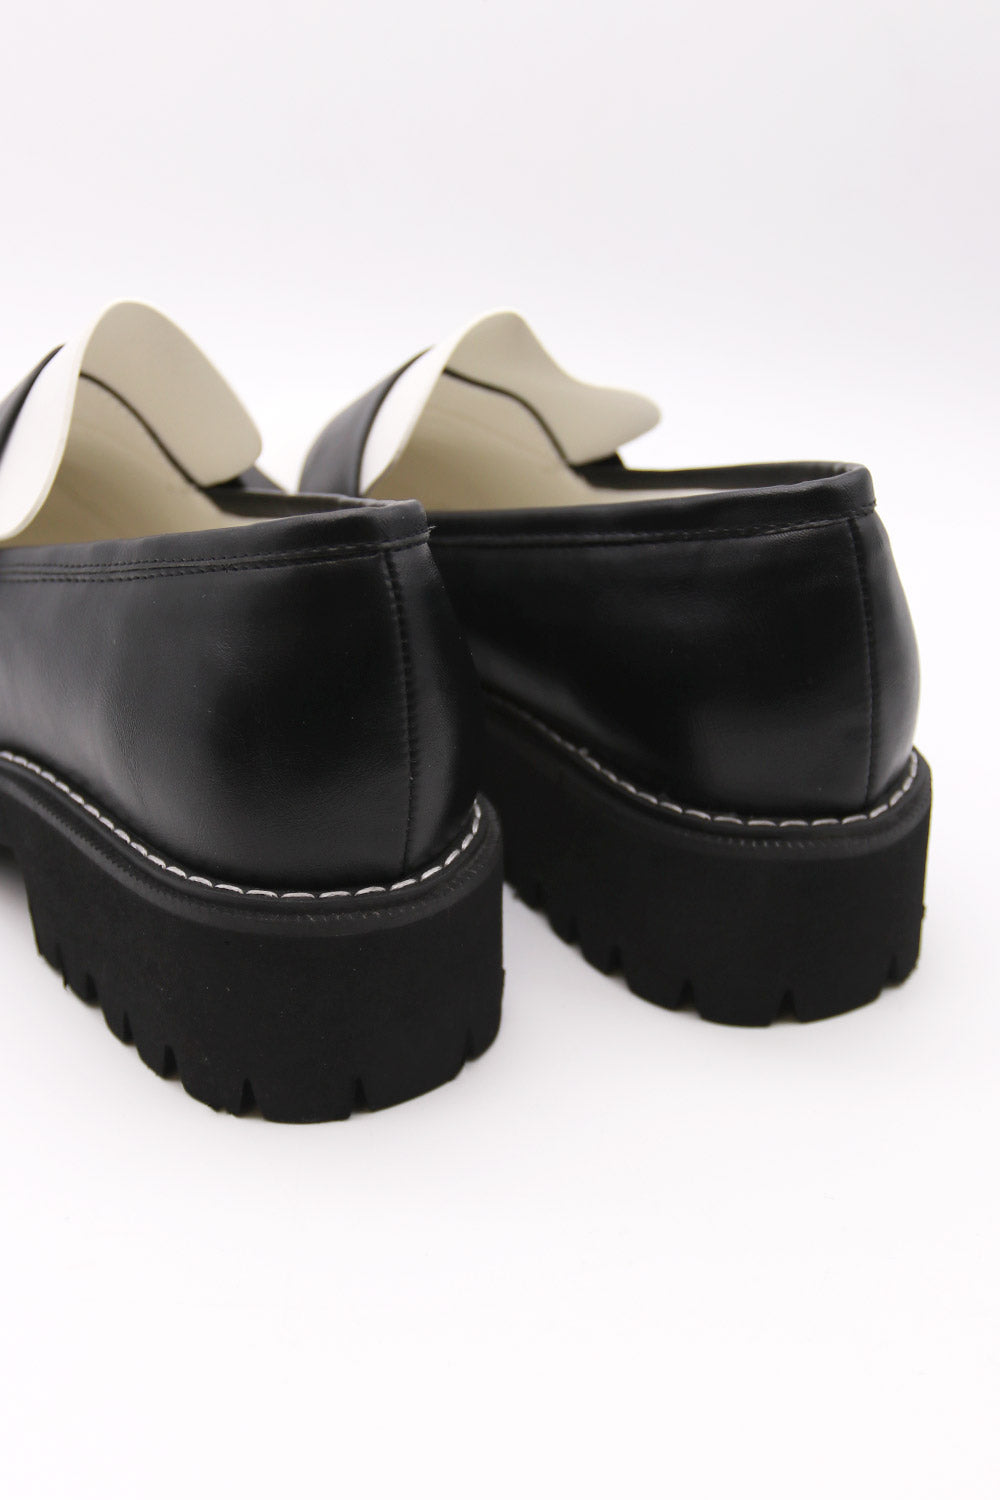 storets.com Colorblock Flatform Loafer